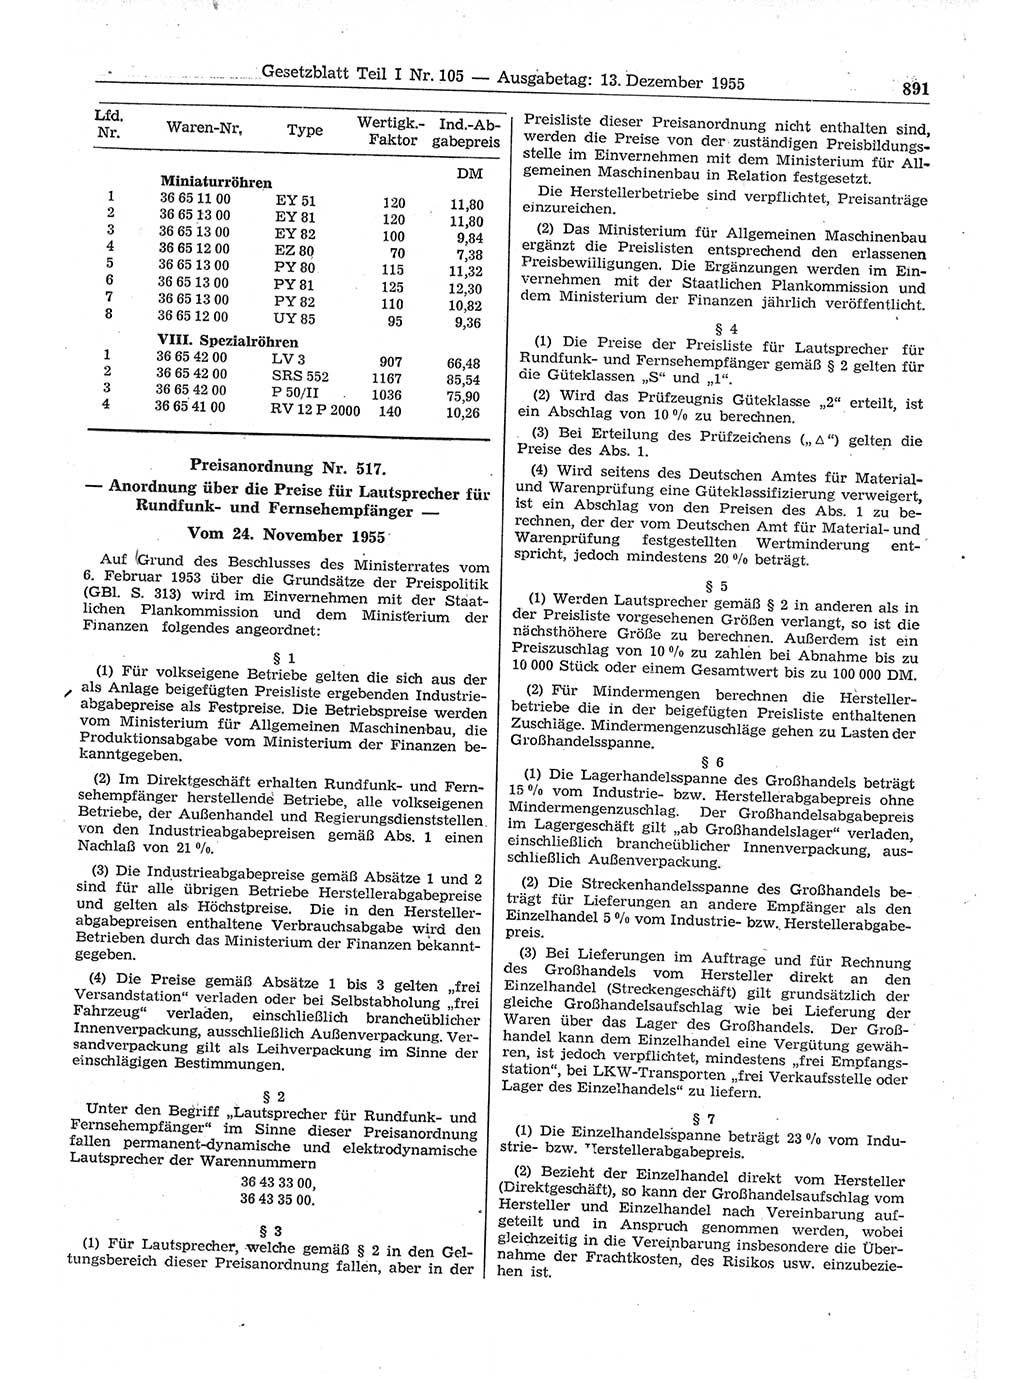 Gesetzblatt (GBl.) der Deutschen Demokratischen Republik (DDR) Teil Ⅰ 1955, Seite 891 (GBl. DDR Ⅰ 1955, S. 891)